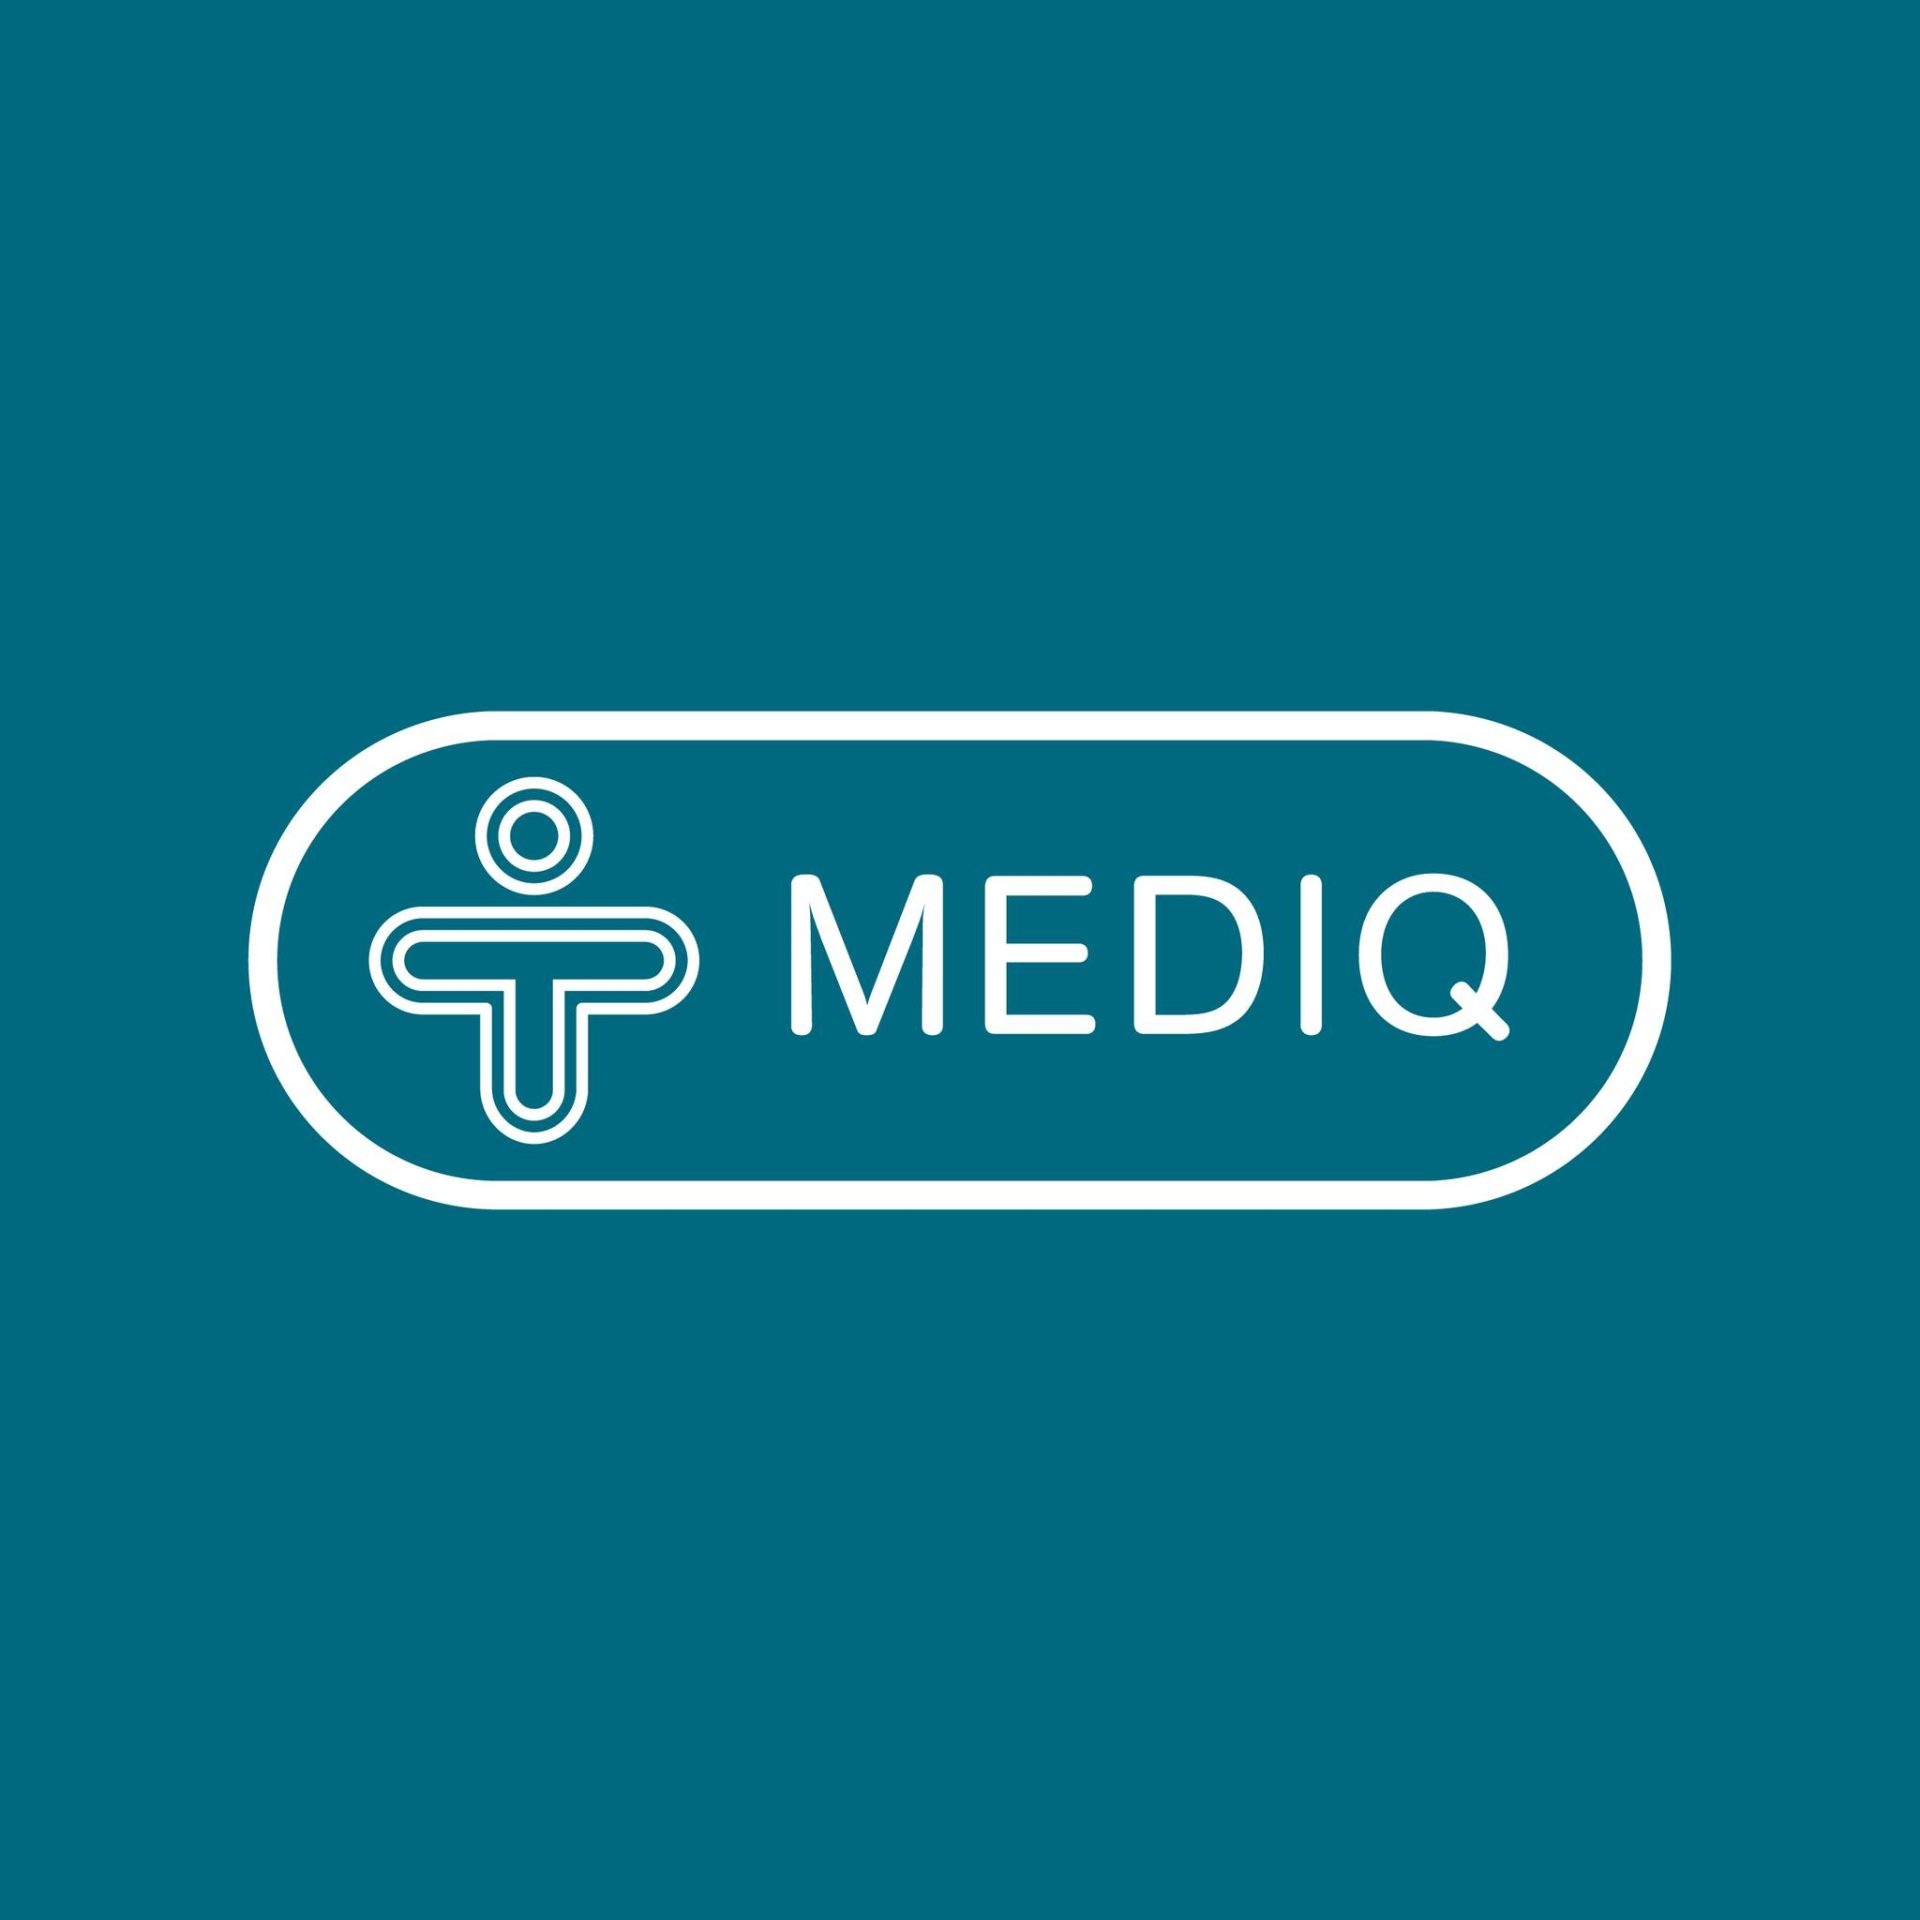 Mediq logo